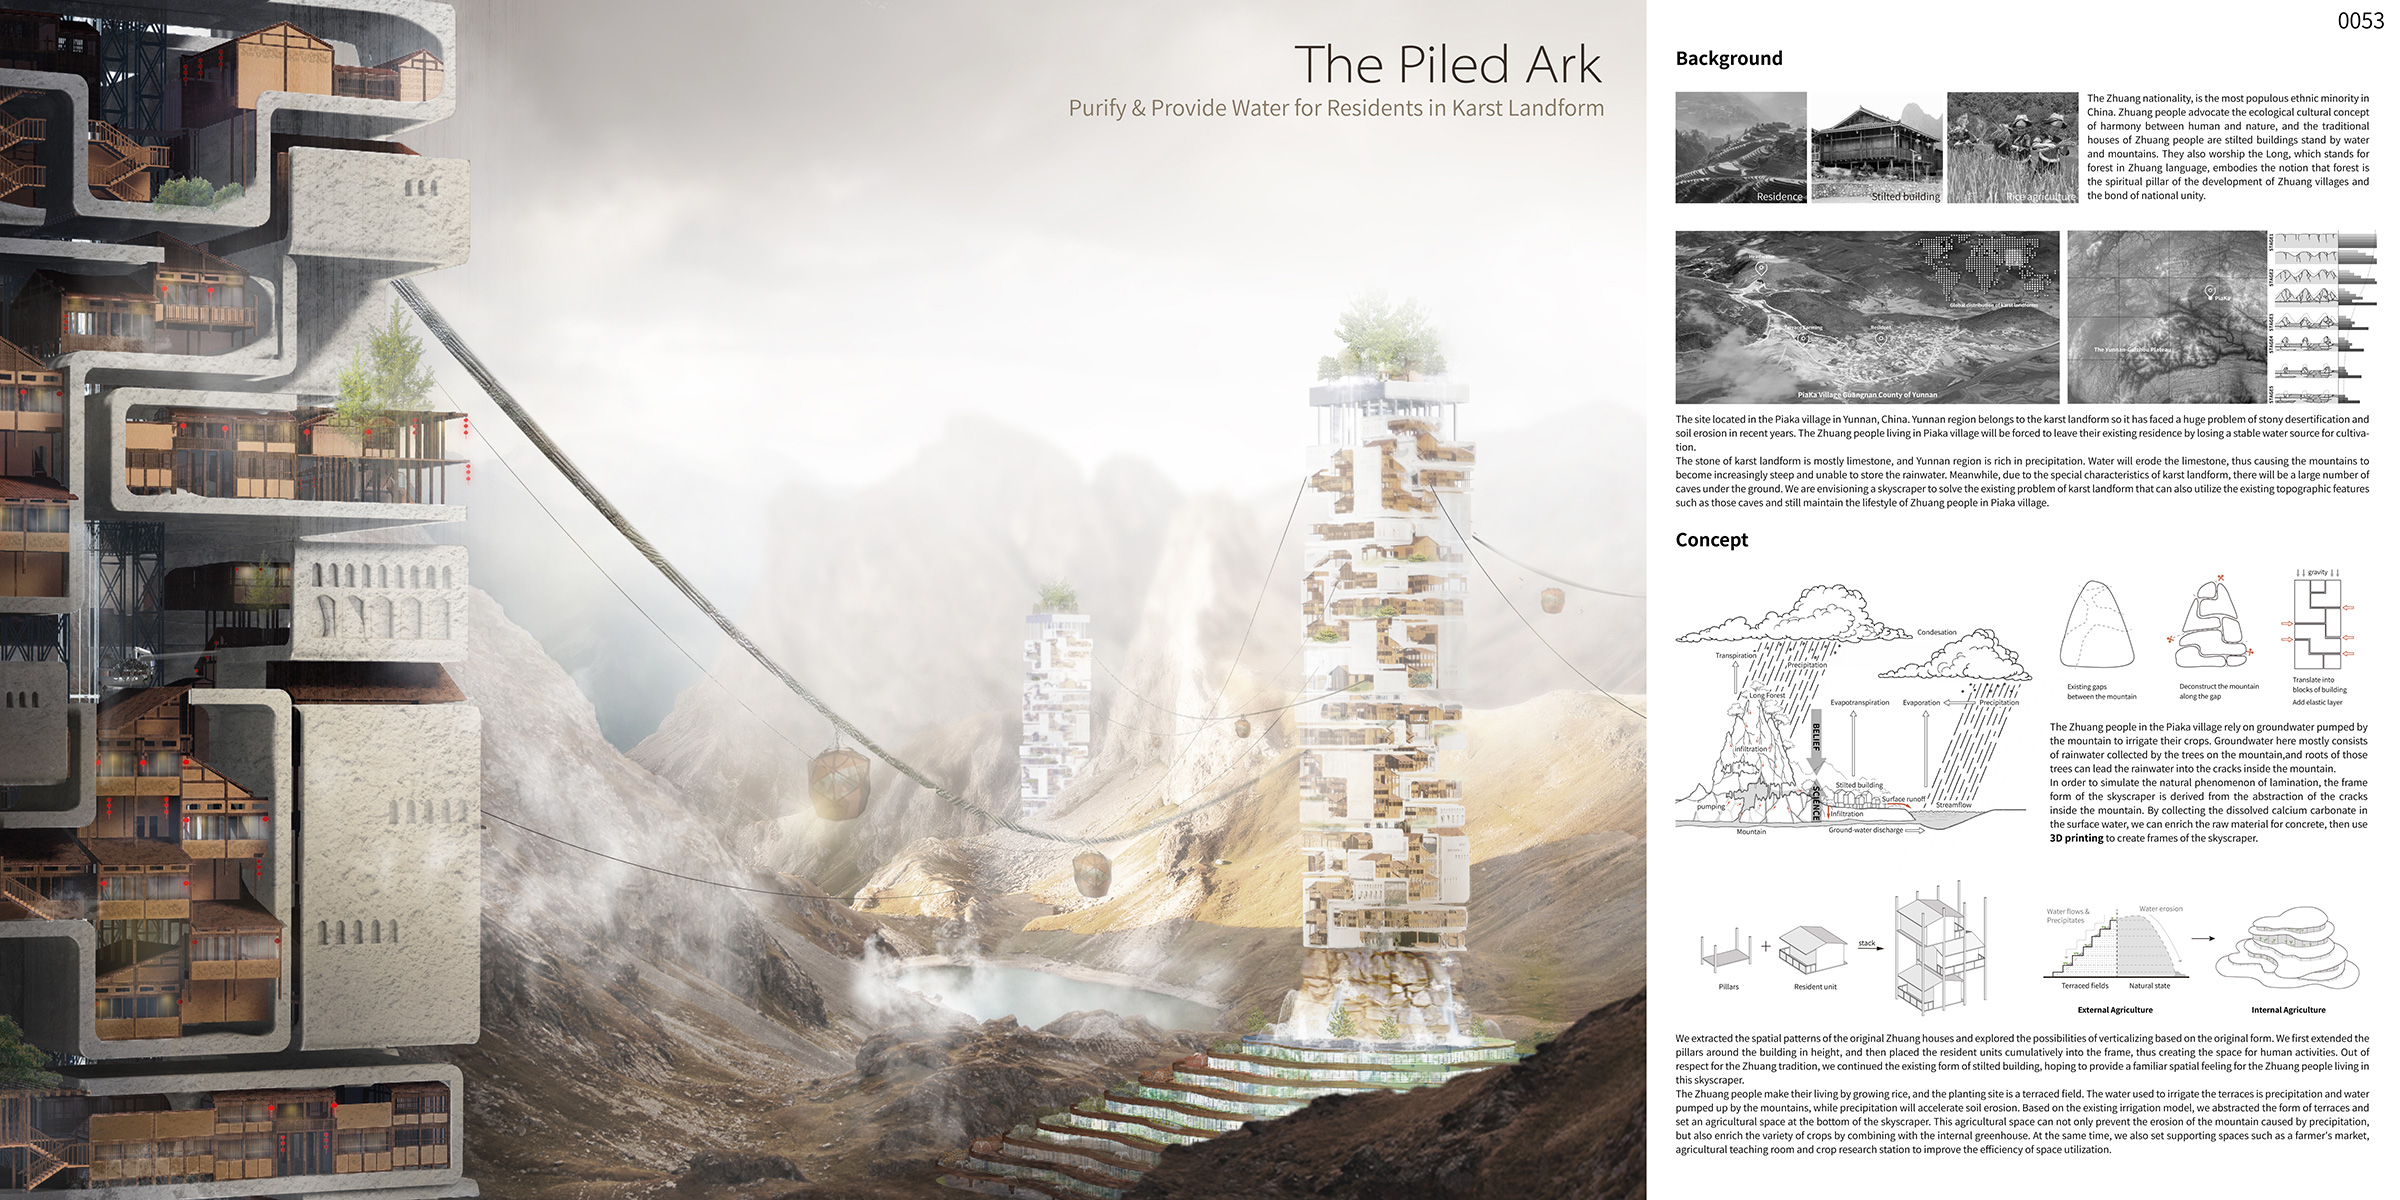 The Piled Ark: Water Purification Skyscraper - eVolo | Architecture Magazine